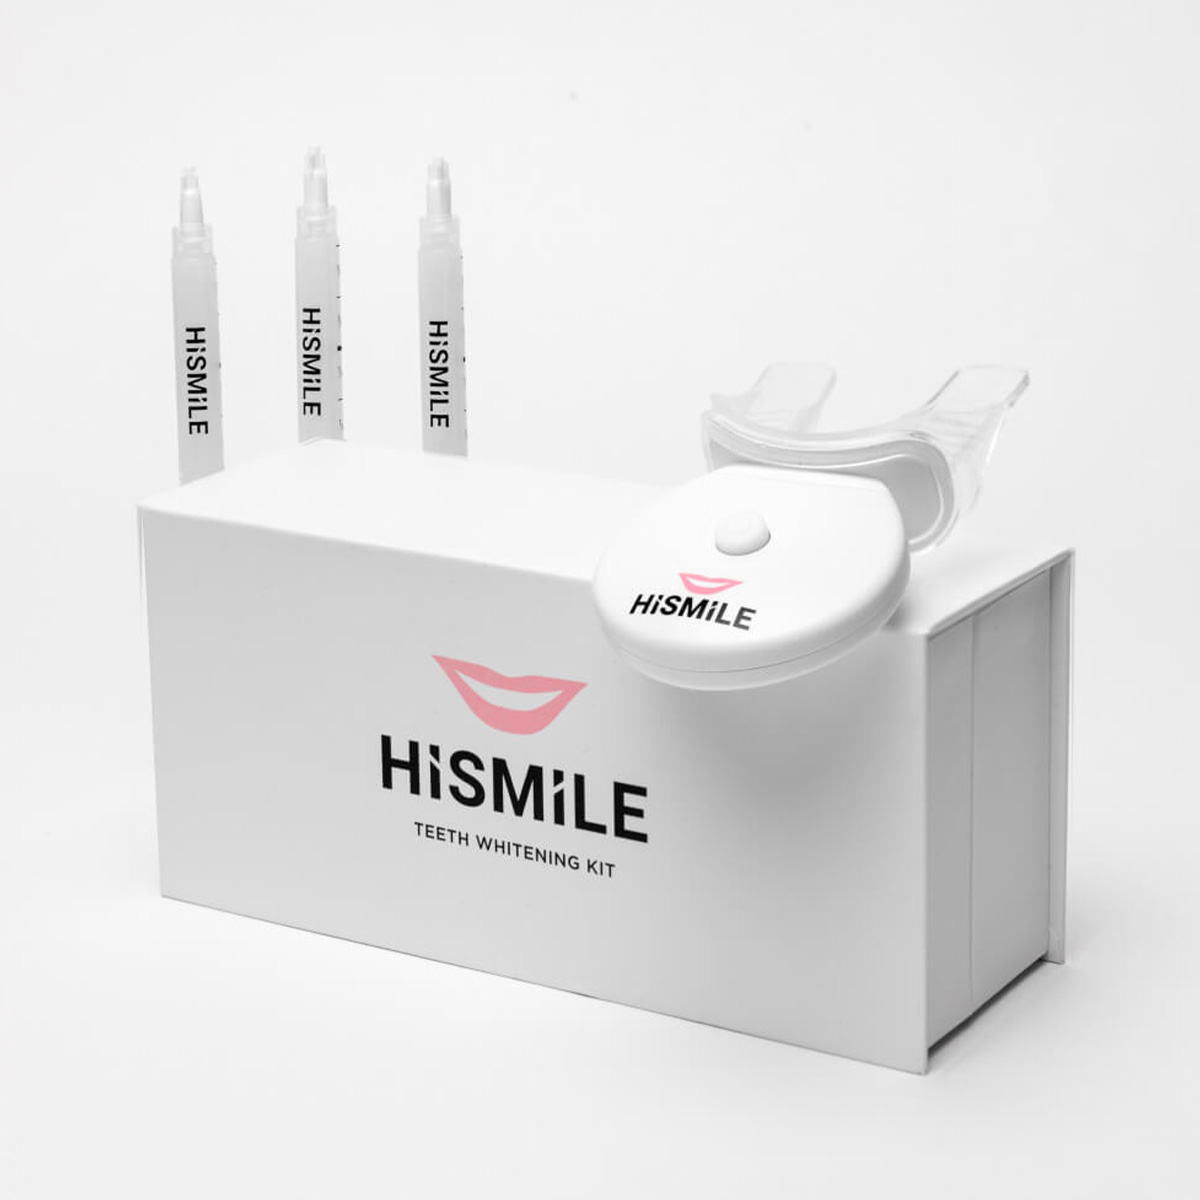 HiSmile Teeth Whitening Kit